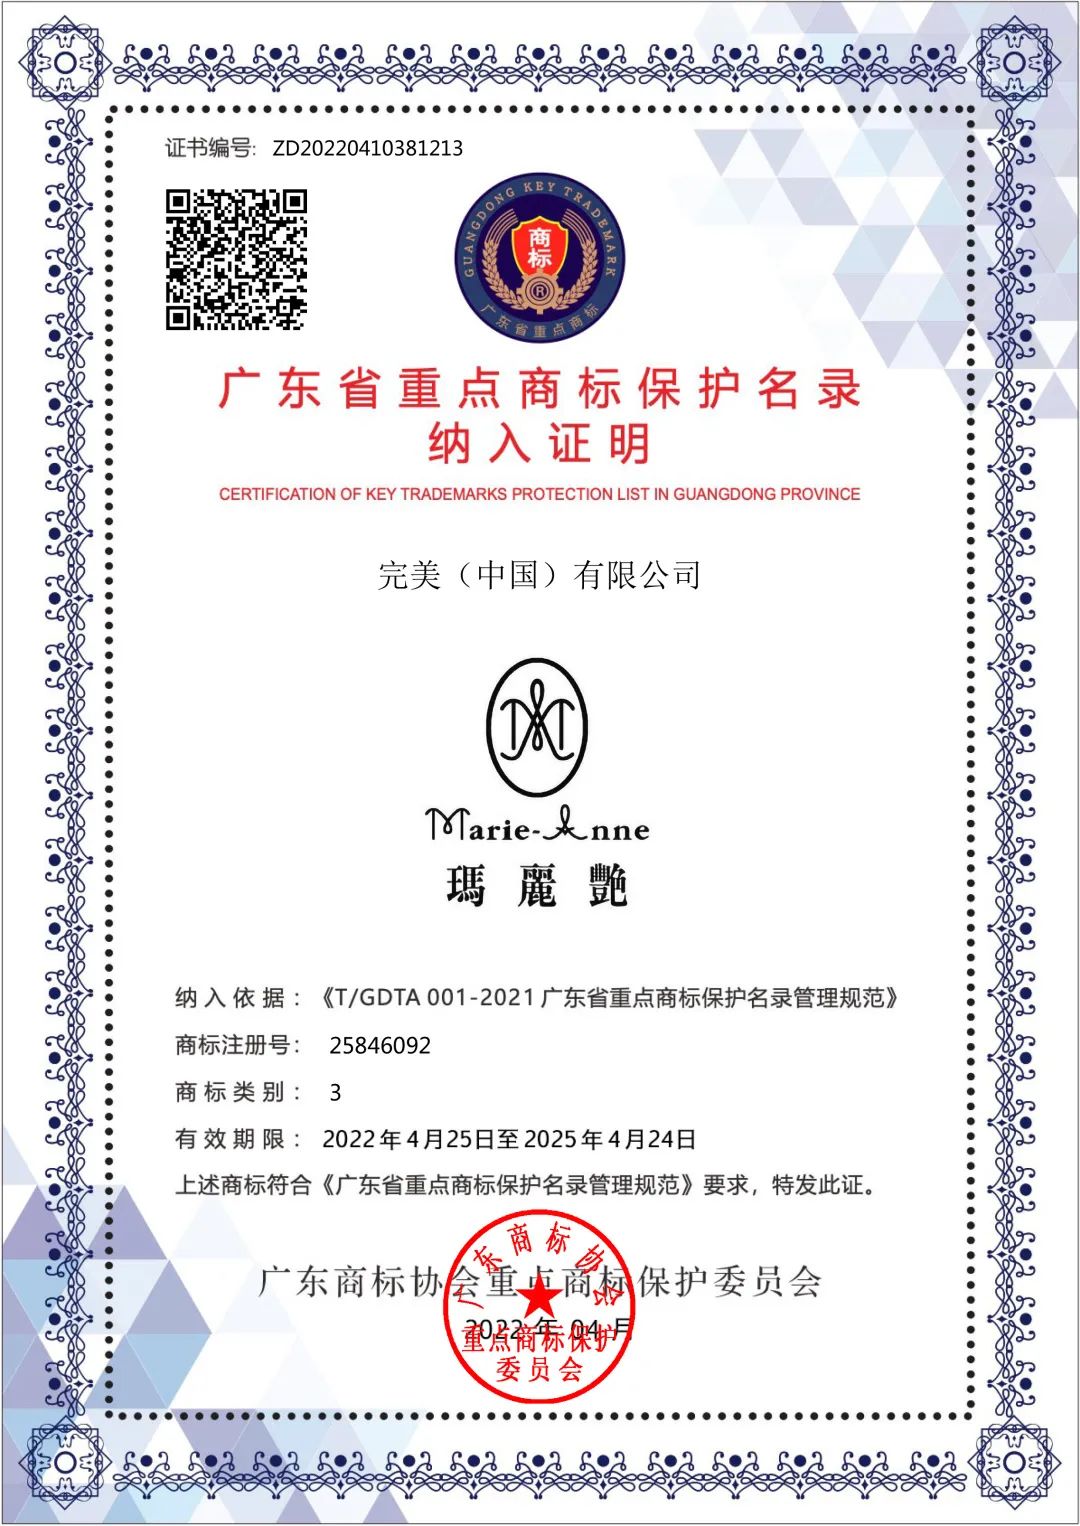 完美芦荟胶等商标入选《广东省重点商标保护名录》